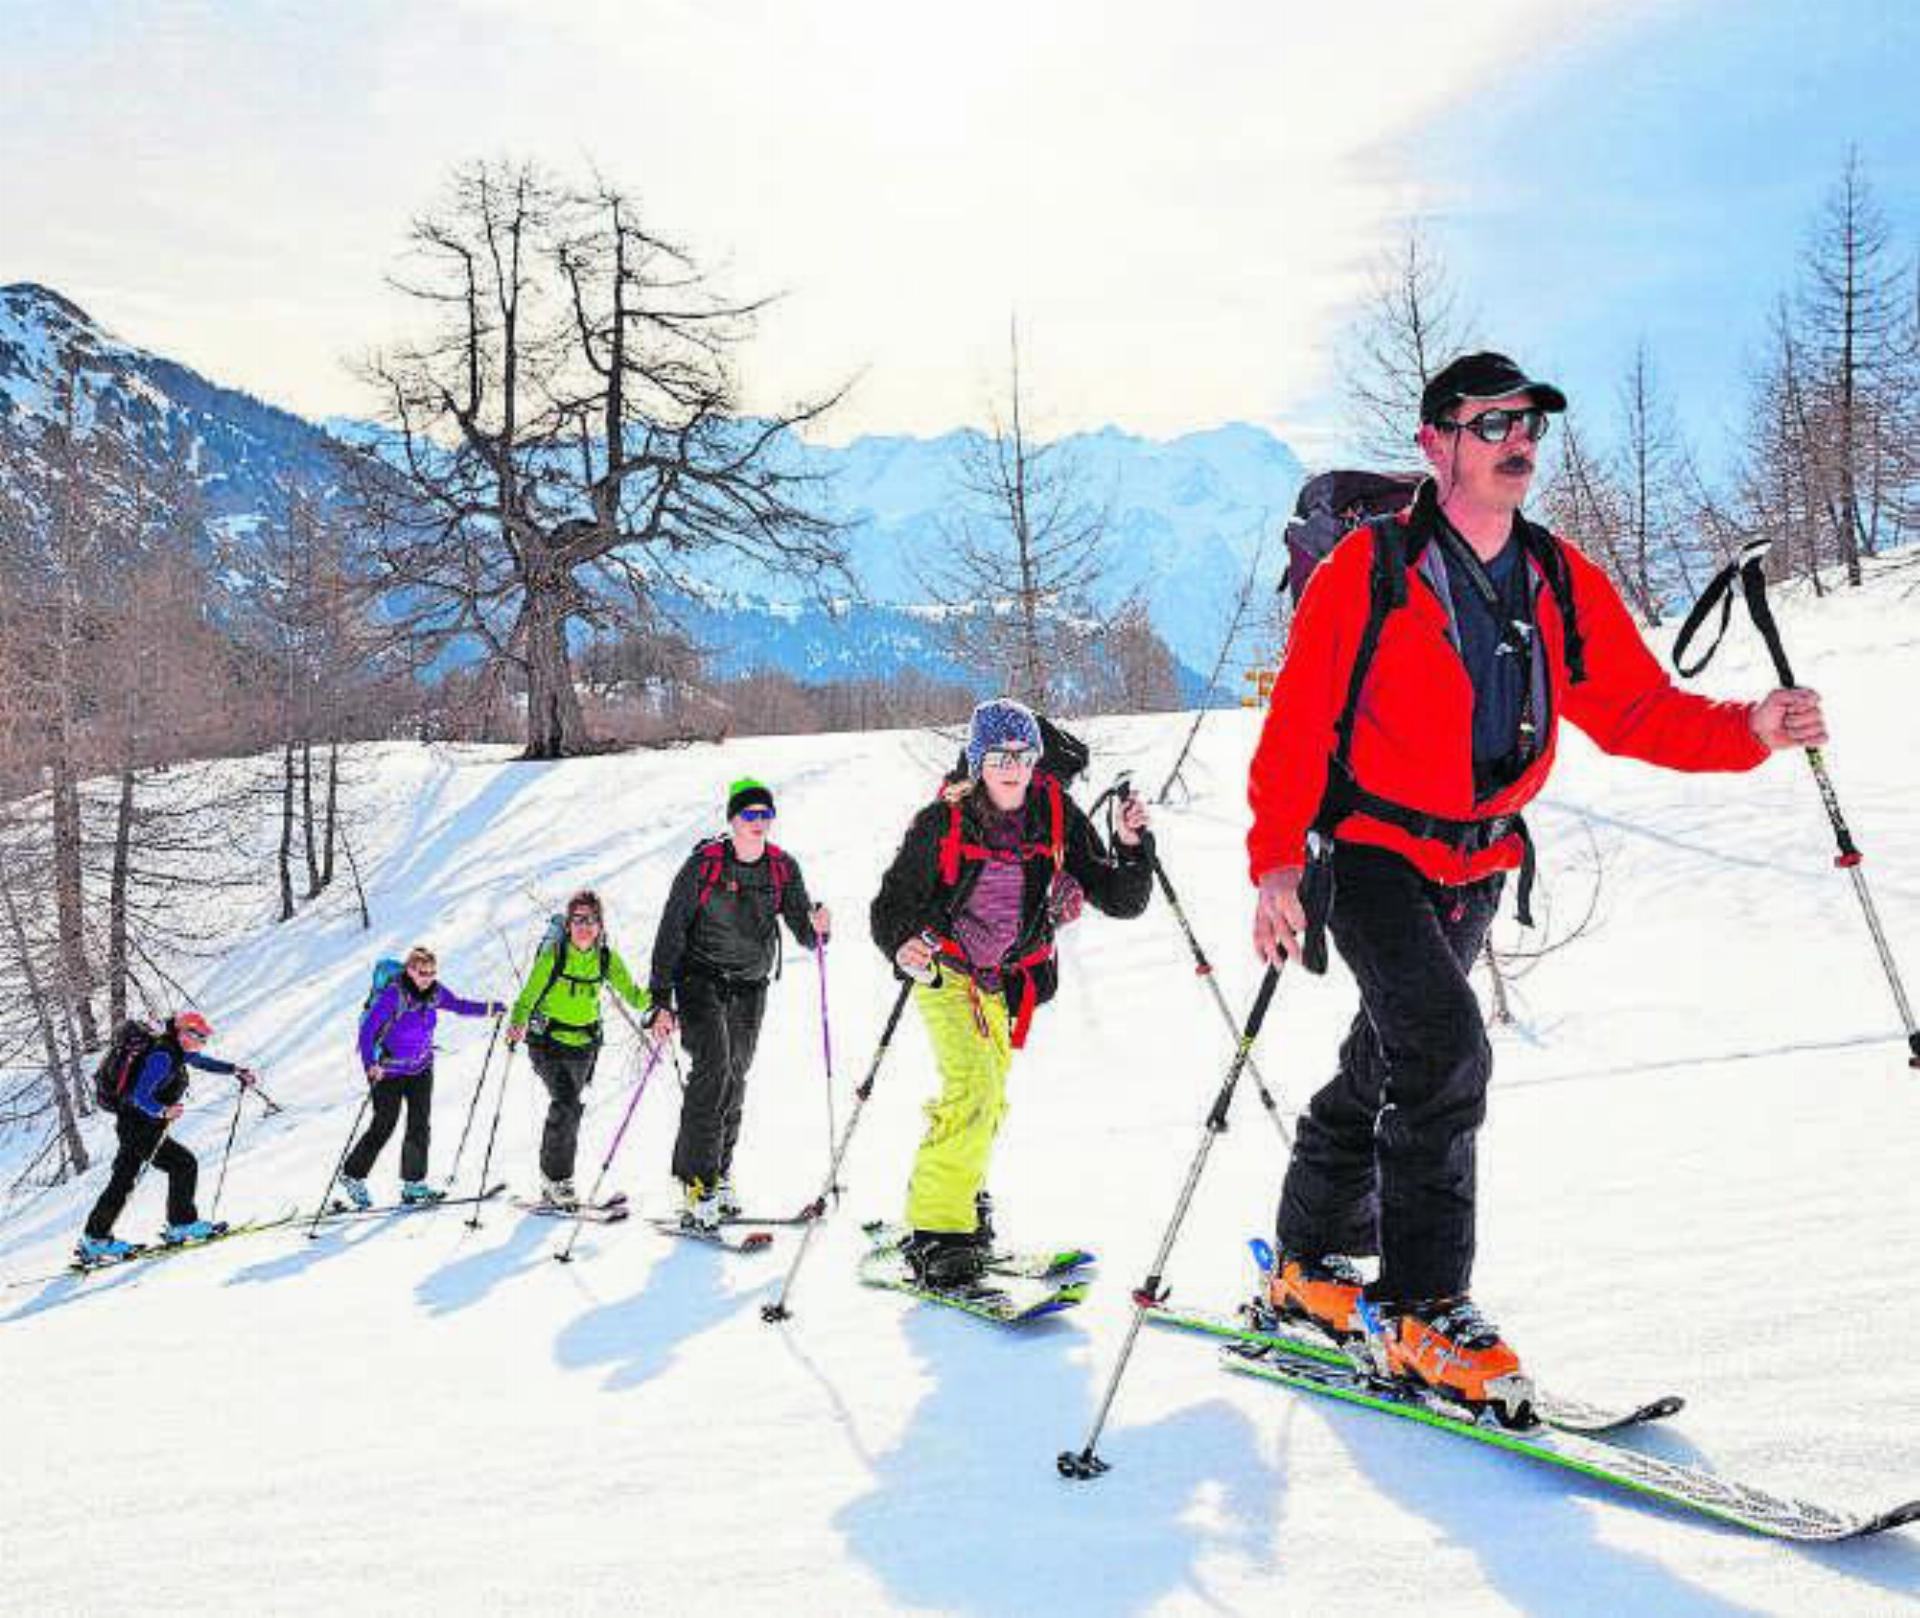 Eine gut geführte Skitour verspricht Freude und Sicherheit. Bild: zg